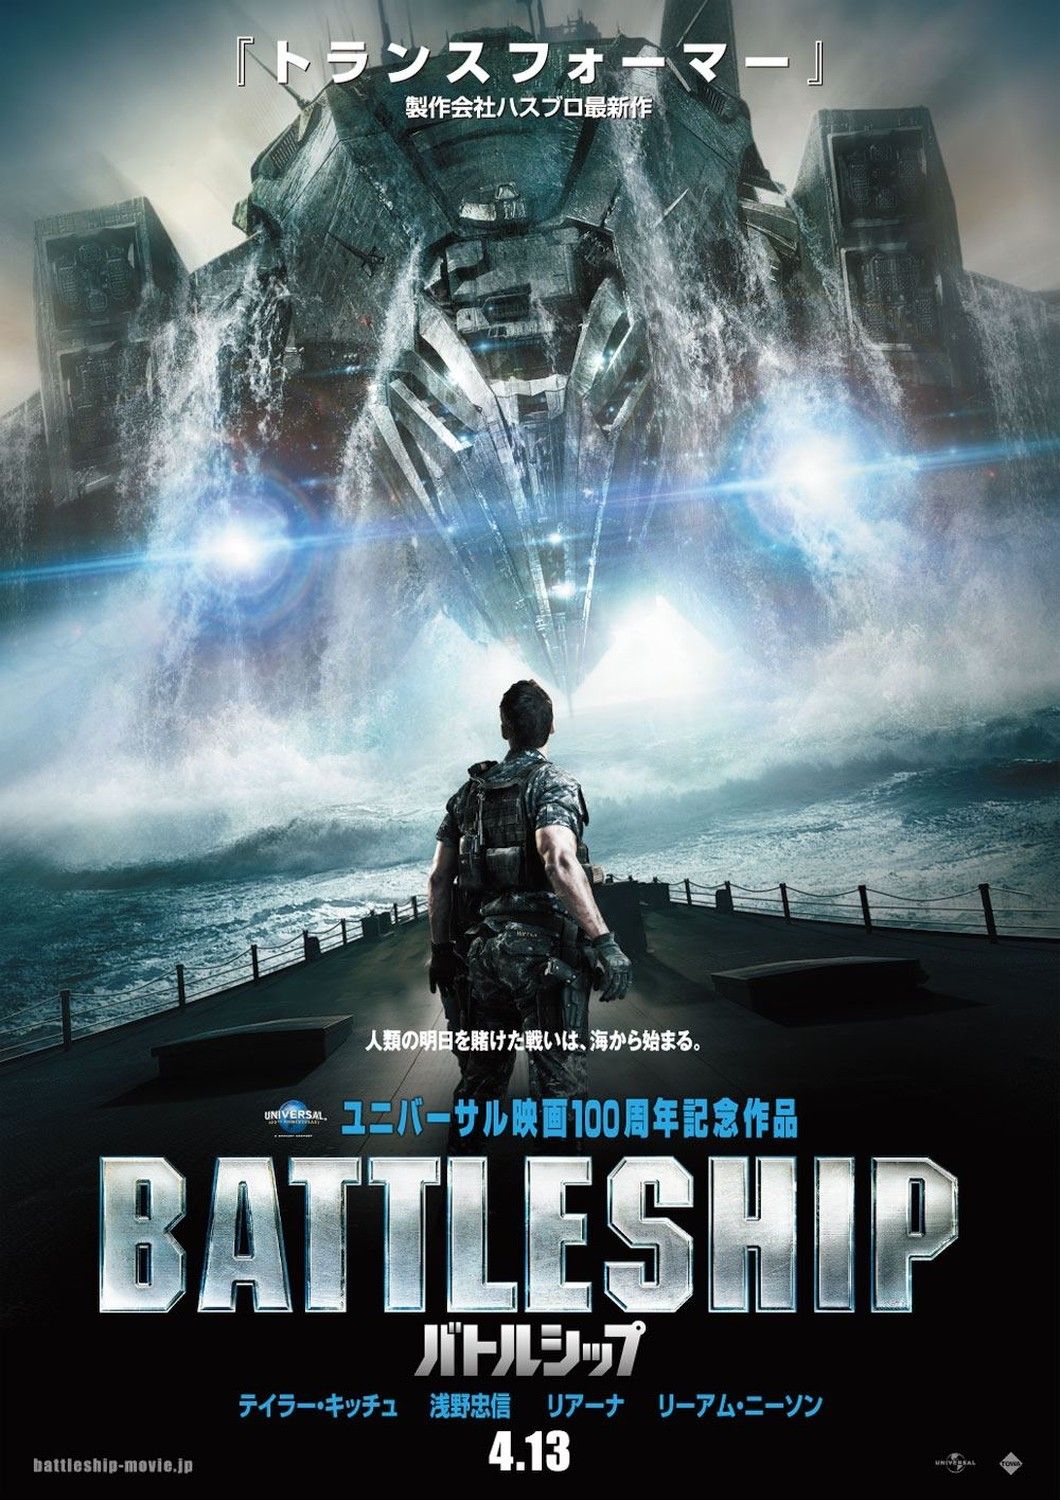 Japanese Battleship poster